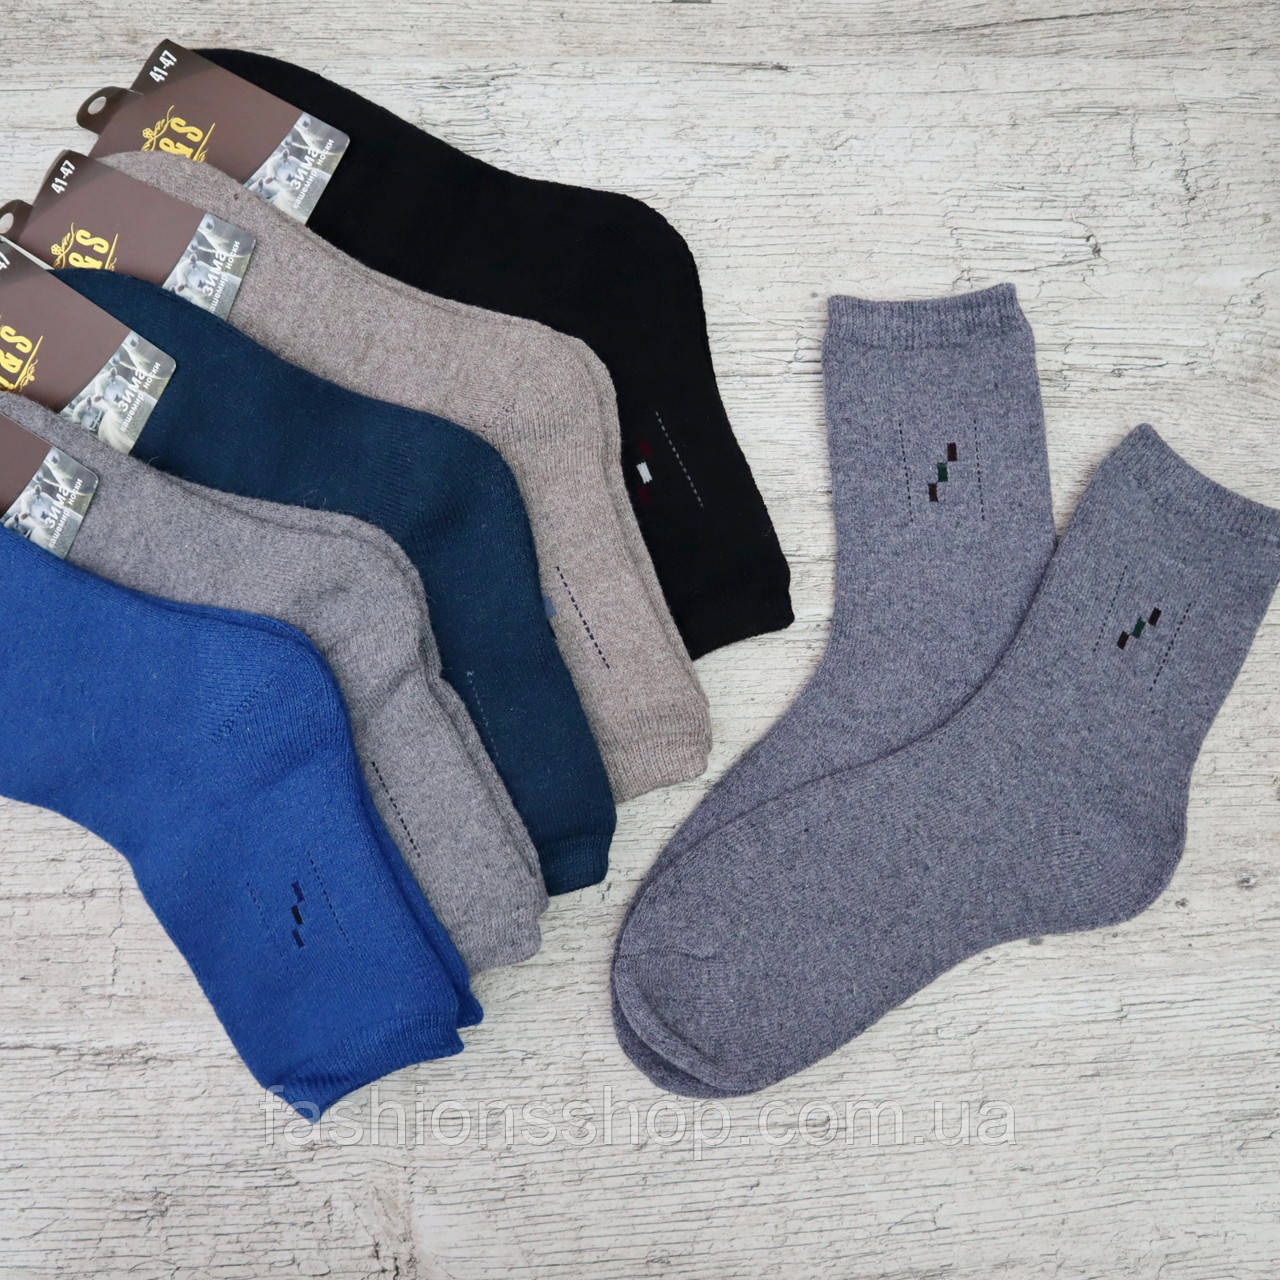 Шкарпетки чоловічі КАШЕМІР. 41-47 р-р . Чоловічі теплі зимові шкарпетки , утеплені, шкарпетки для чоловіків